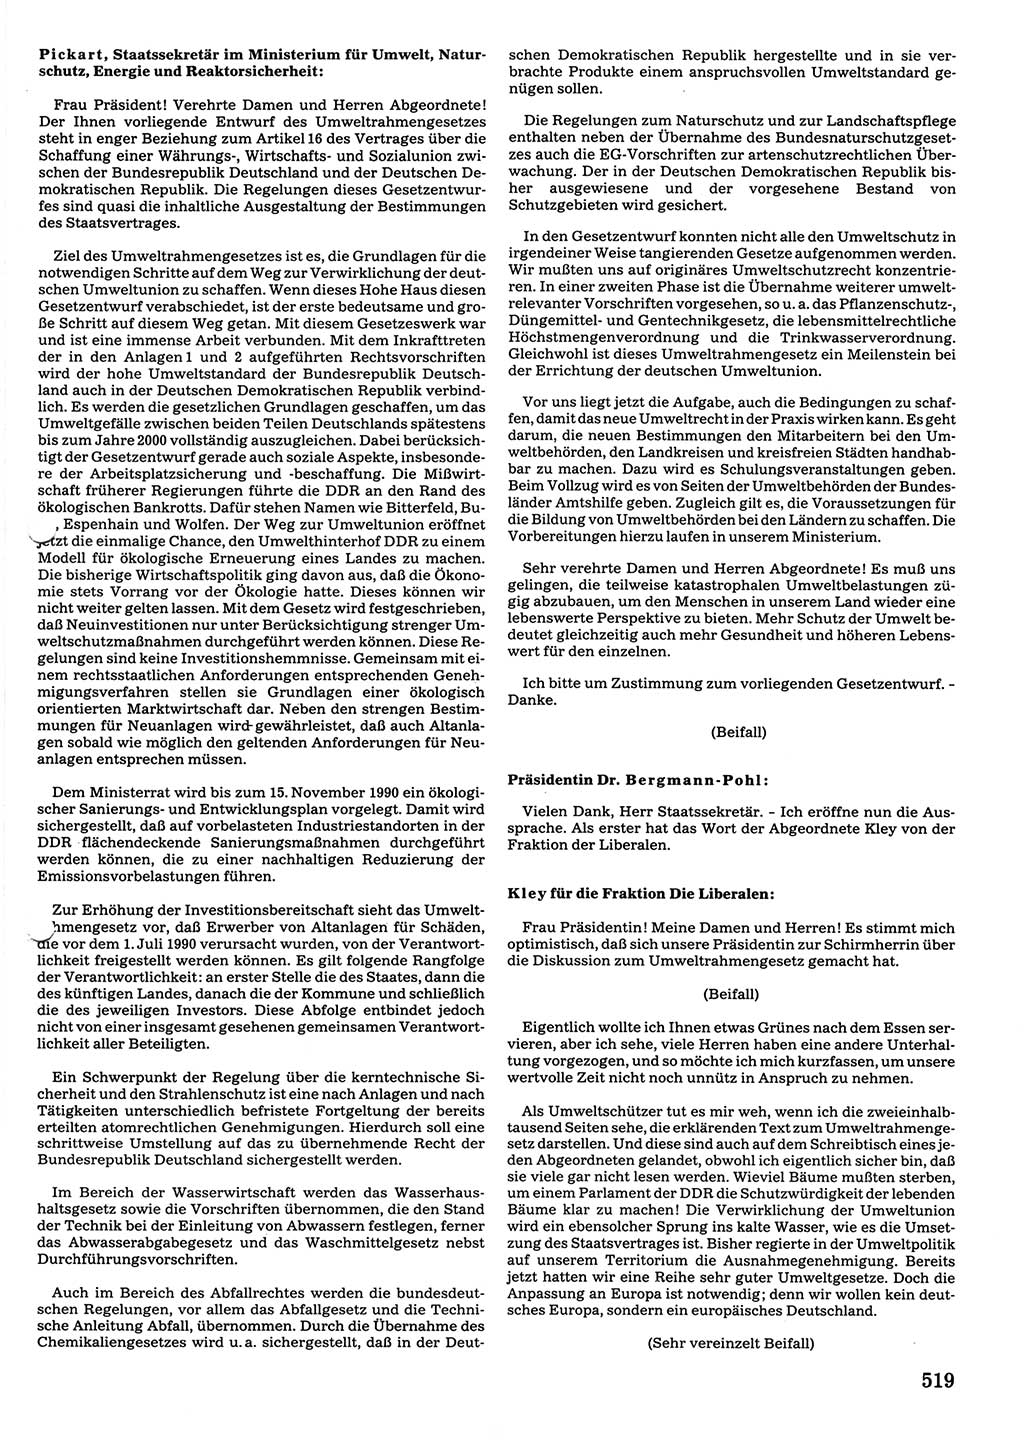 Tagungen der Volkskammer (VK) der Deutschen Demokratischen Republik (DDR), 10. Wahlperiode 1990, Seite 519 (VK. DDR 10. WP. 1990, Prot. Tg. 1-38, 5.4.-2.10.1990, S. 519)